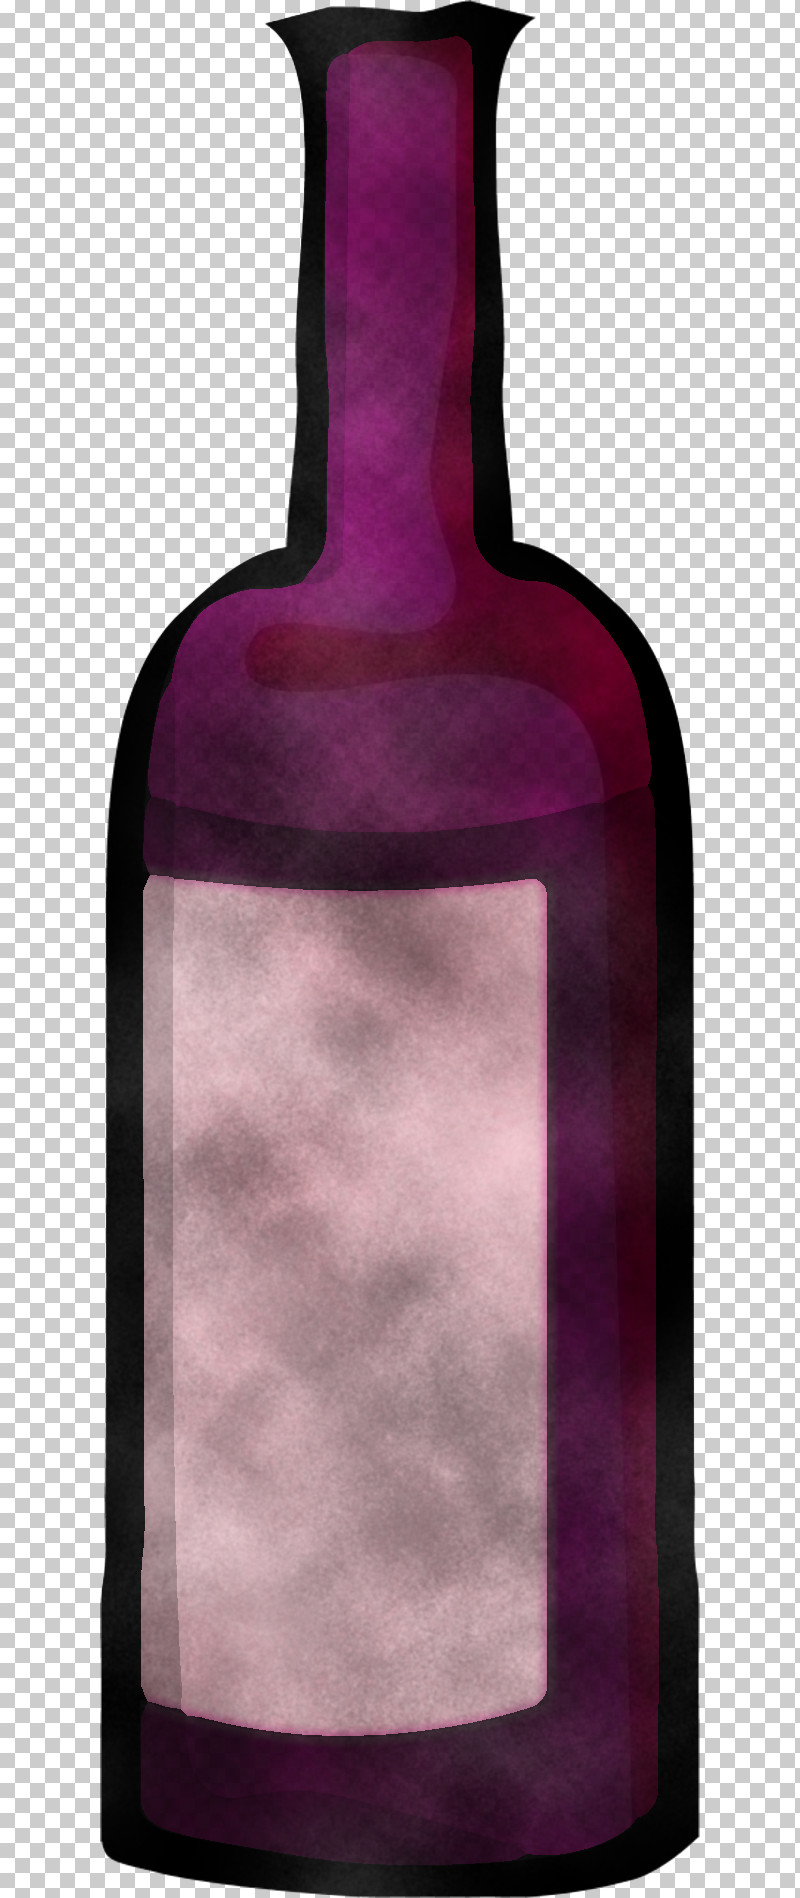 Bottle Purple Violet Pink Glass Bottle PNG, Clipart, Bottle, Glass Bottle, Magenta, Pink, Purple Free PNG Download